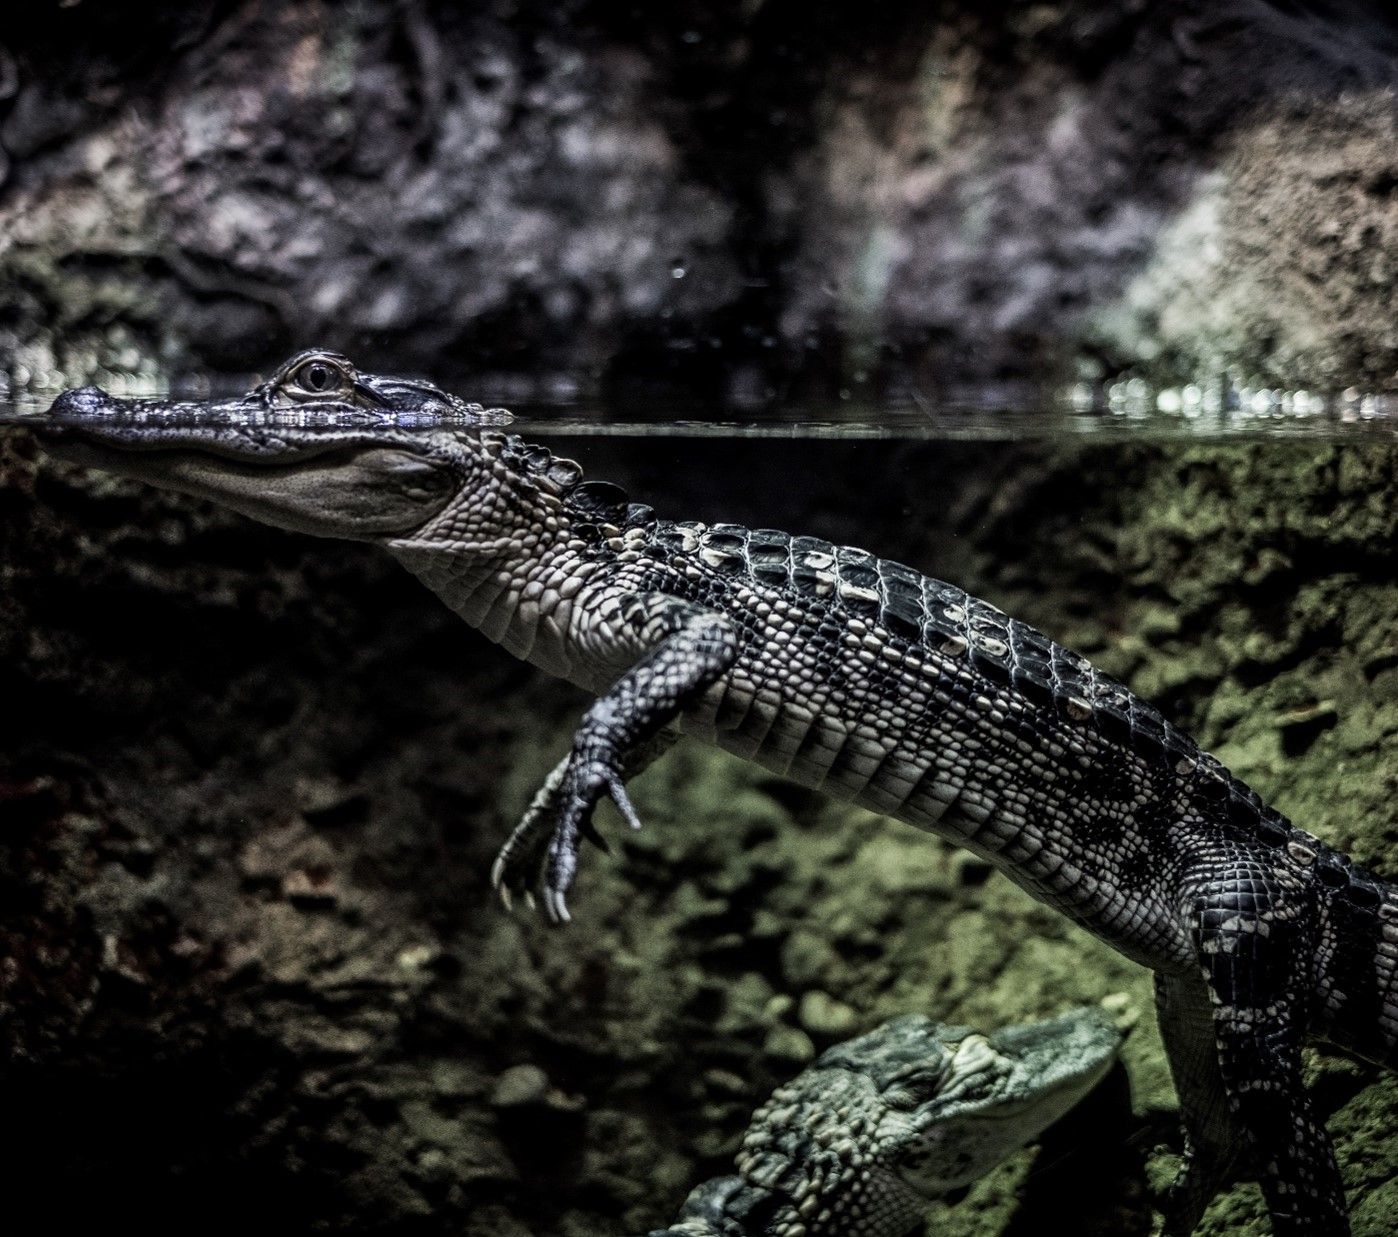 Alligator lauert unter Wasser, aber schaut über die Wasseroberfläche heraus